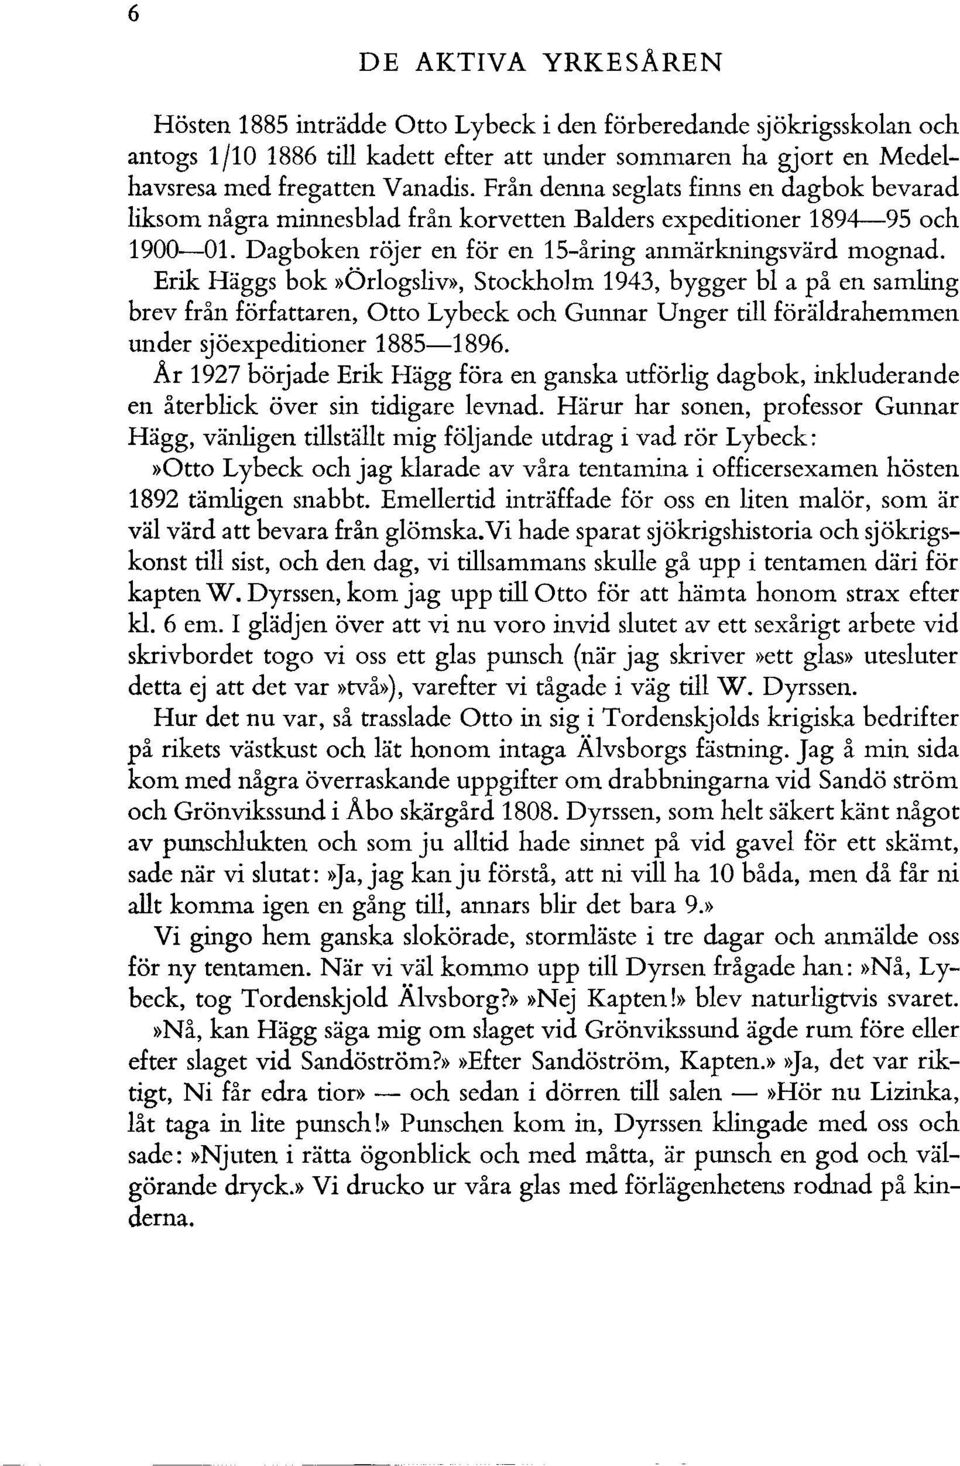 Erik Häggs bok»örlogsliv», Stockholm 1943, bygger bl a på en samling brev från författaren, Otto Lybeck och Gunnar Unger till föräldrahemmen under sjöexpeditioner 1885-1896.